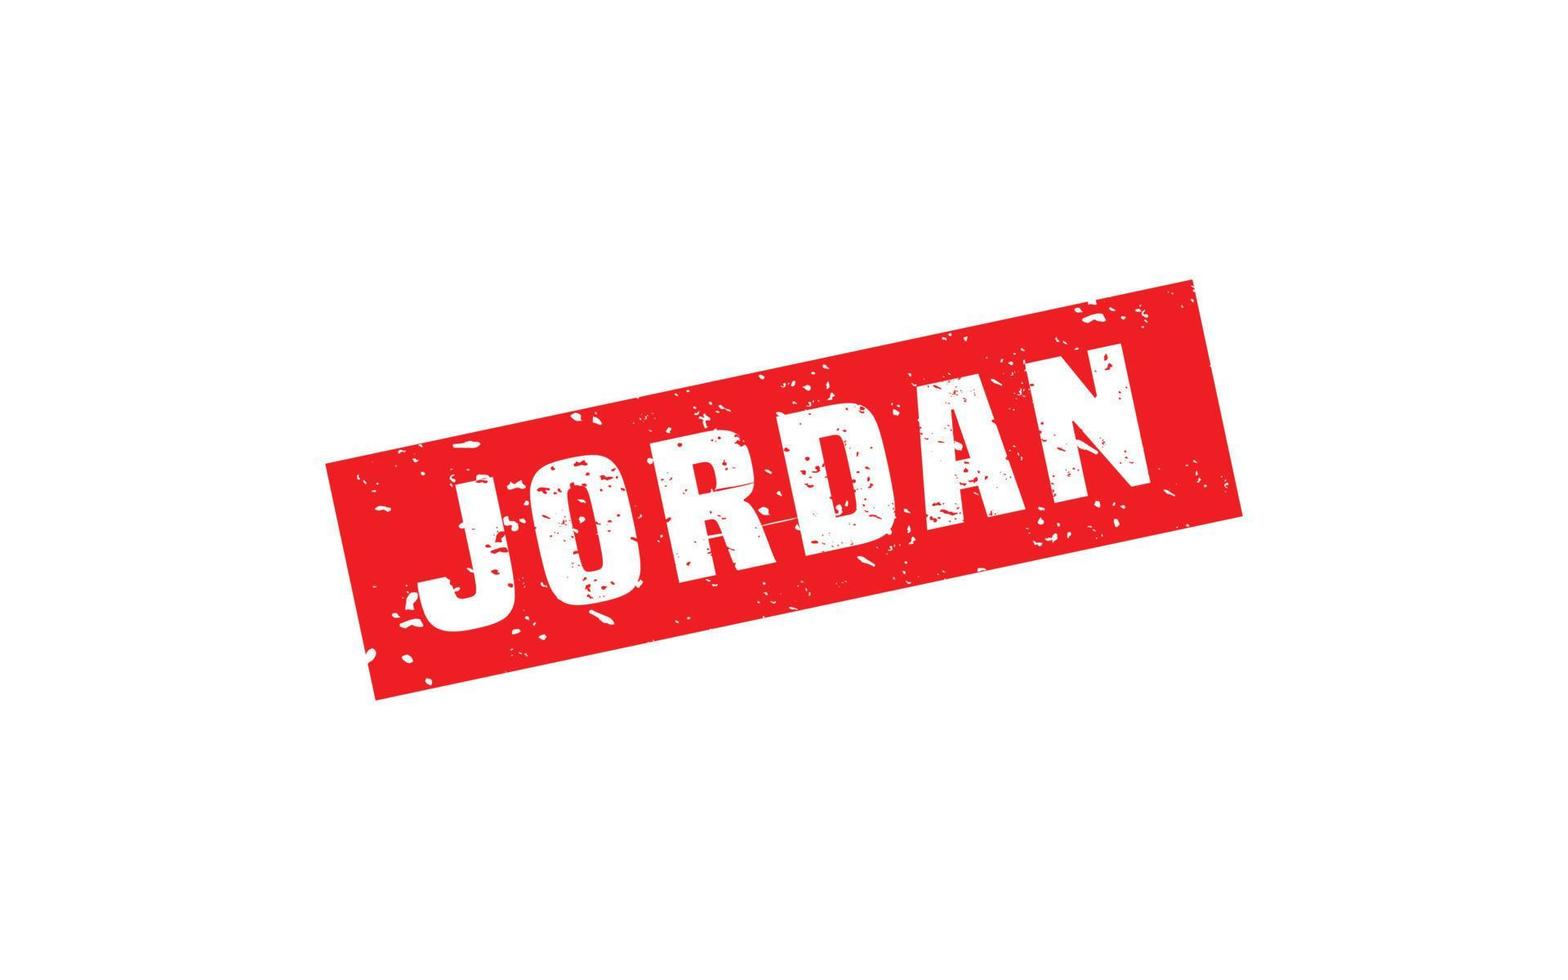 Jordanië postzegel rubber met grunge stijl Aan wit achtergrond vector